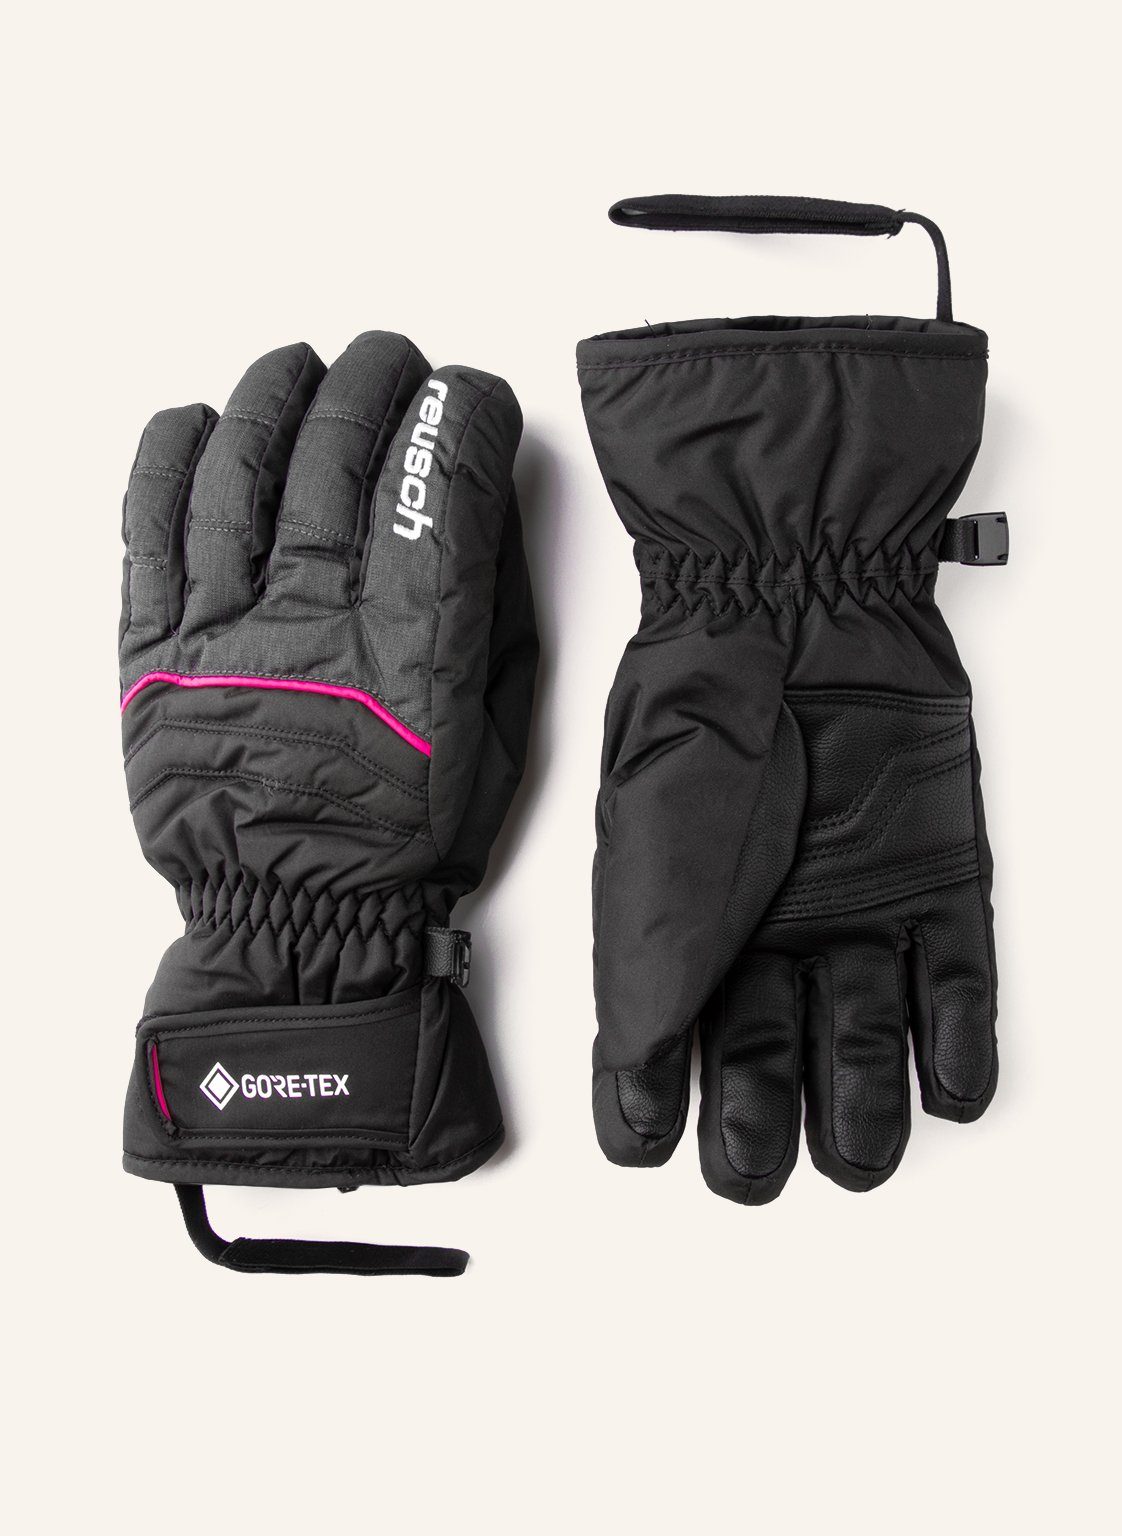 Reusch Skihandschuhe dunkelgrau-pink wasserdichter GORE-TEX Funktionsmembran mit Teddy